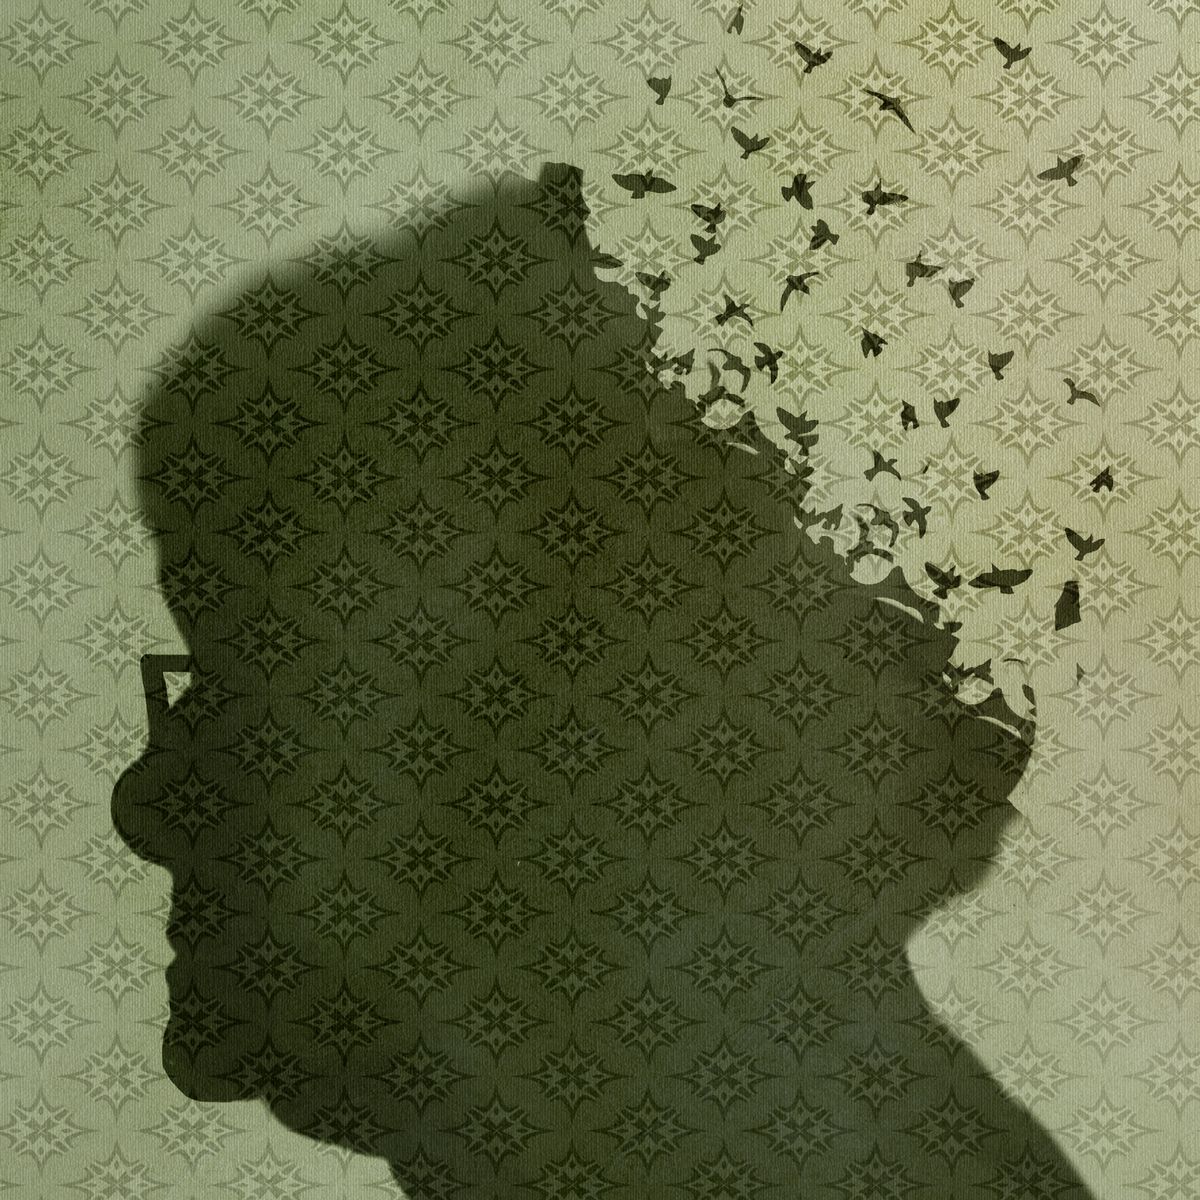 silhouette of a woman battling alzheimer's